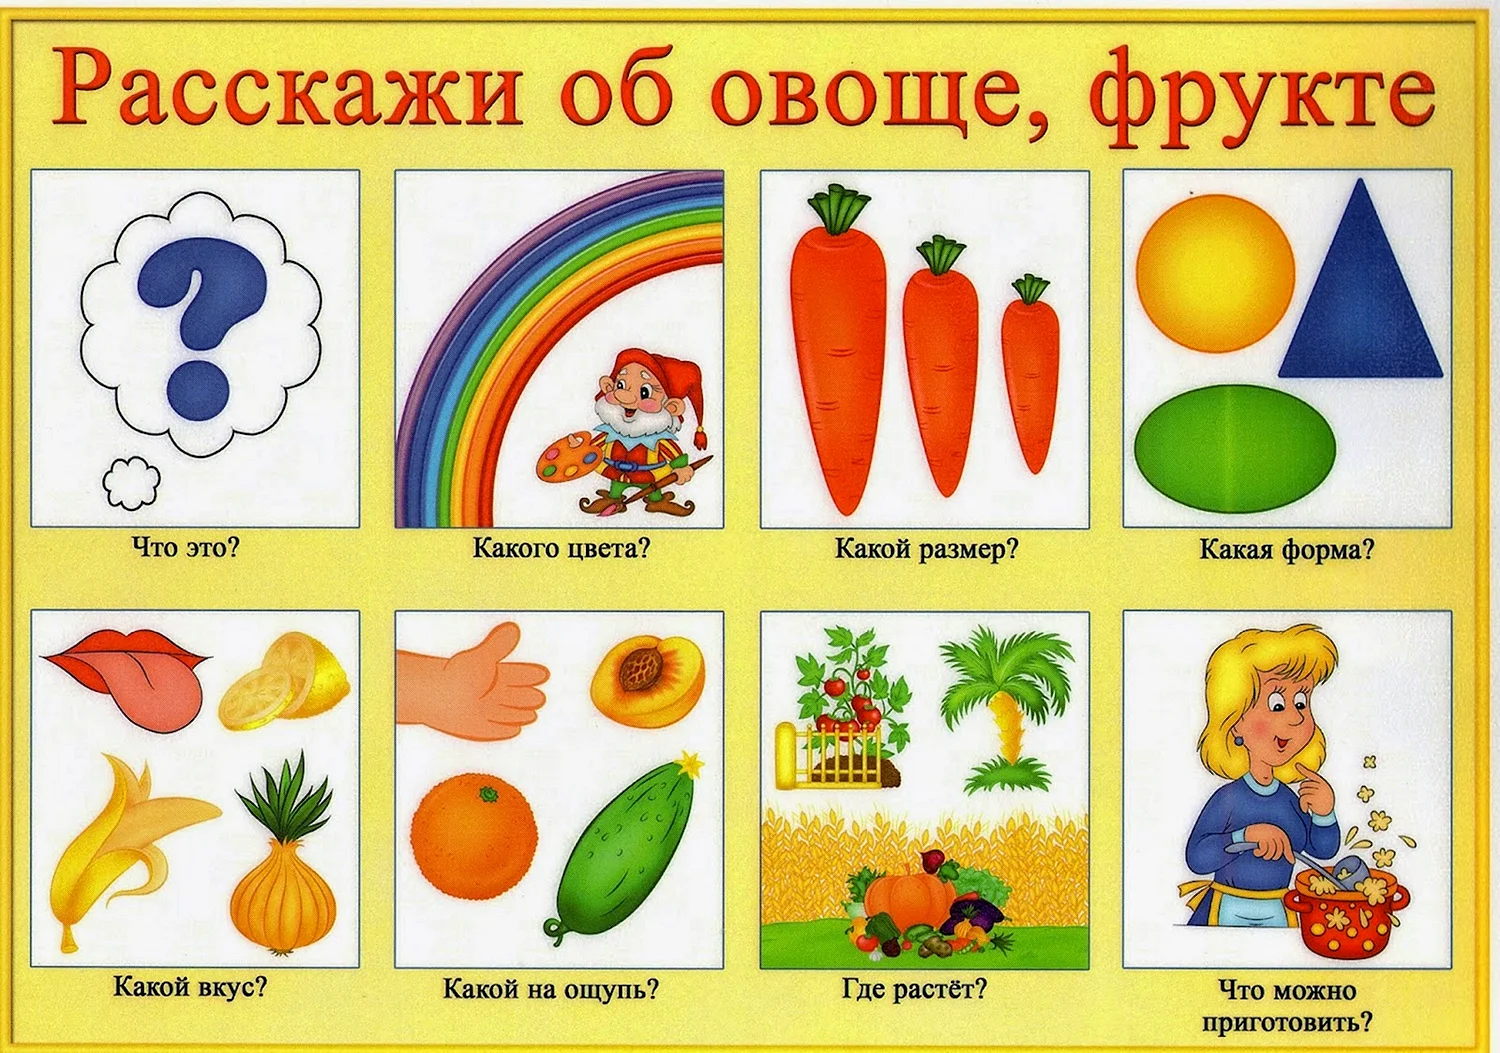 Схема для описания овощей и фруктов